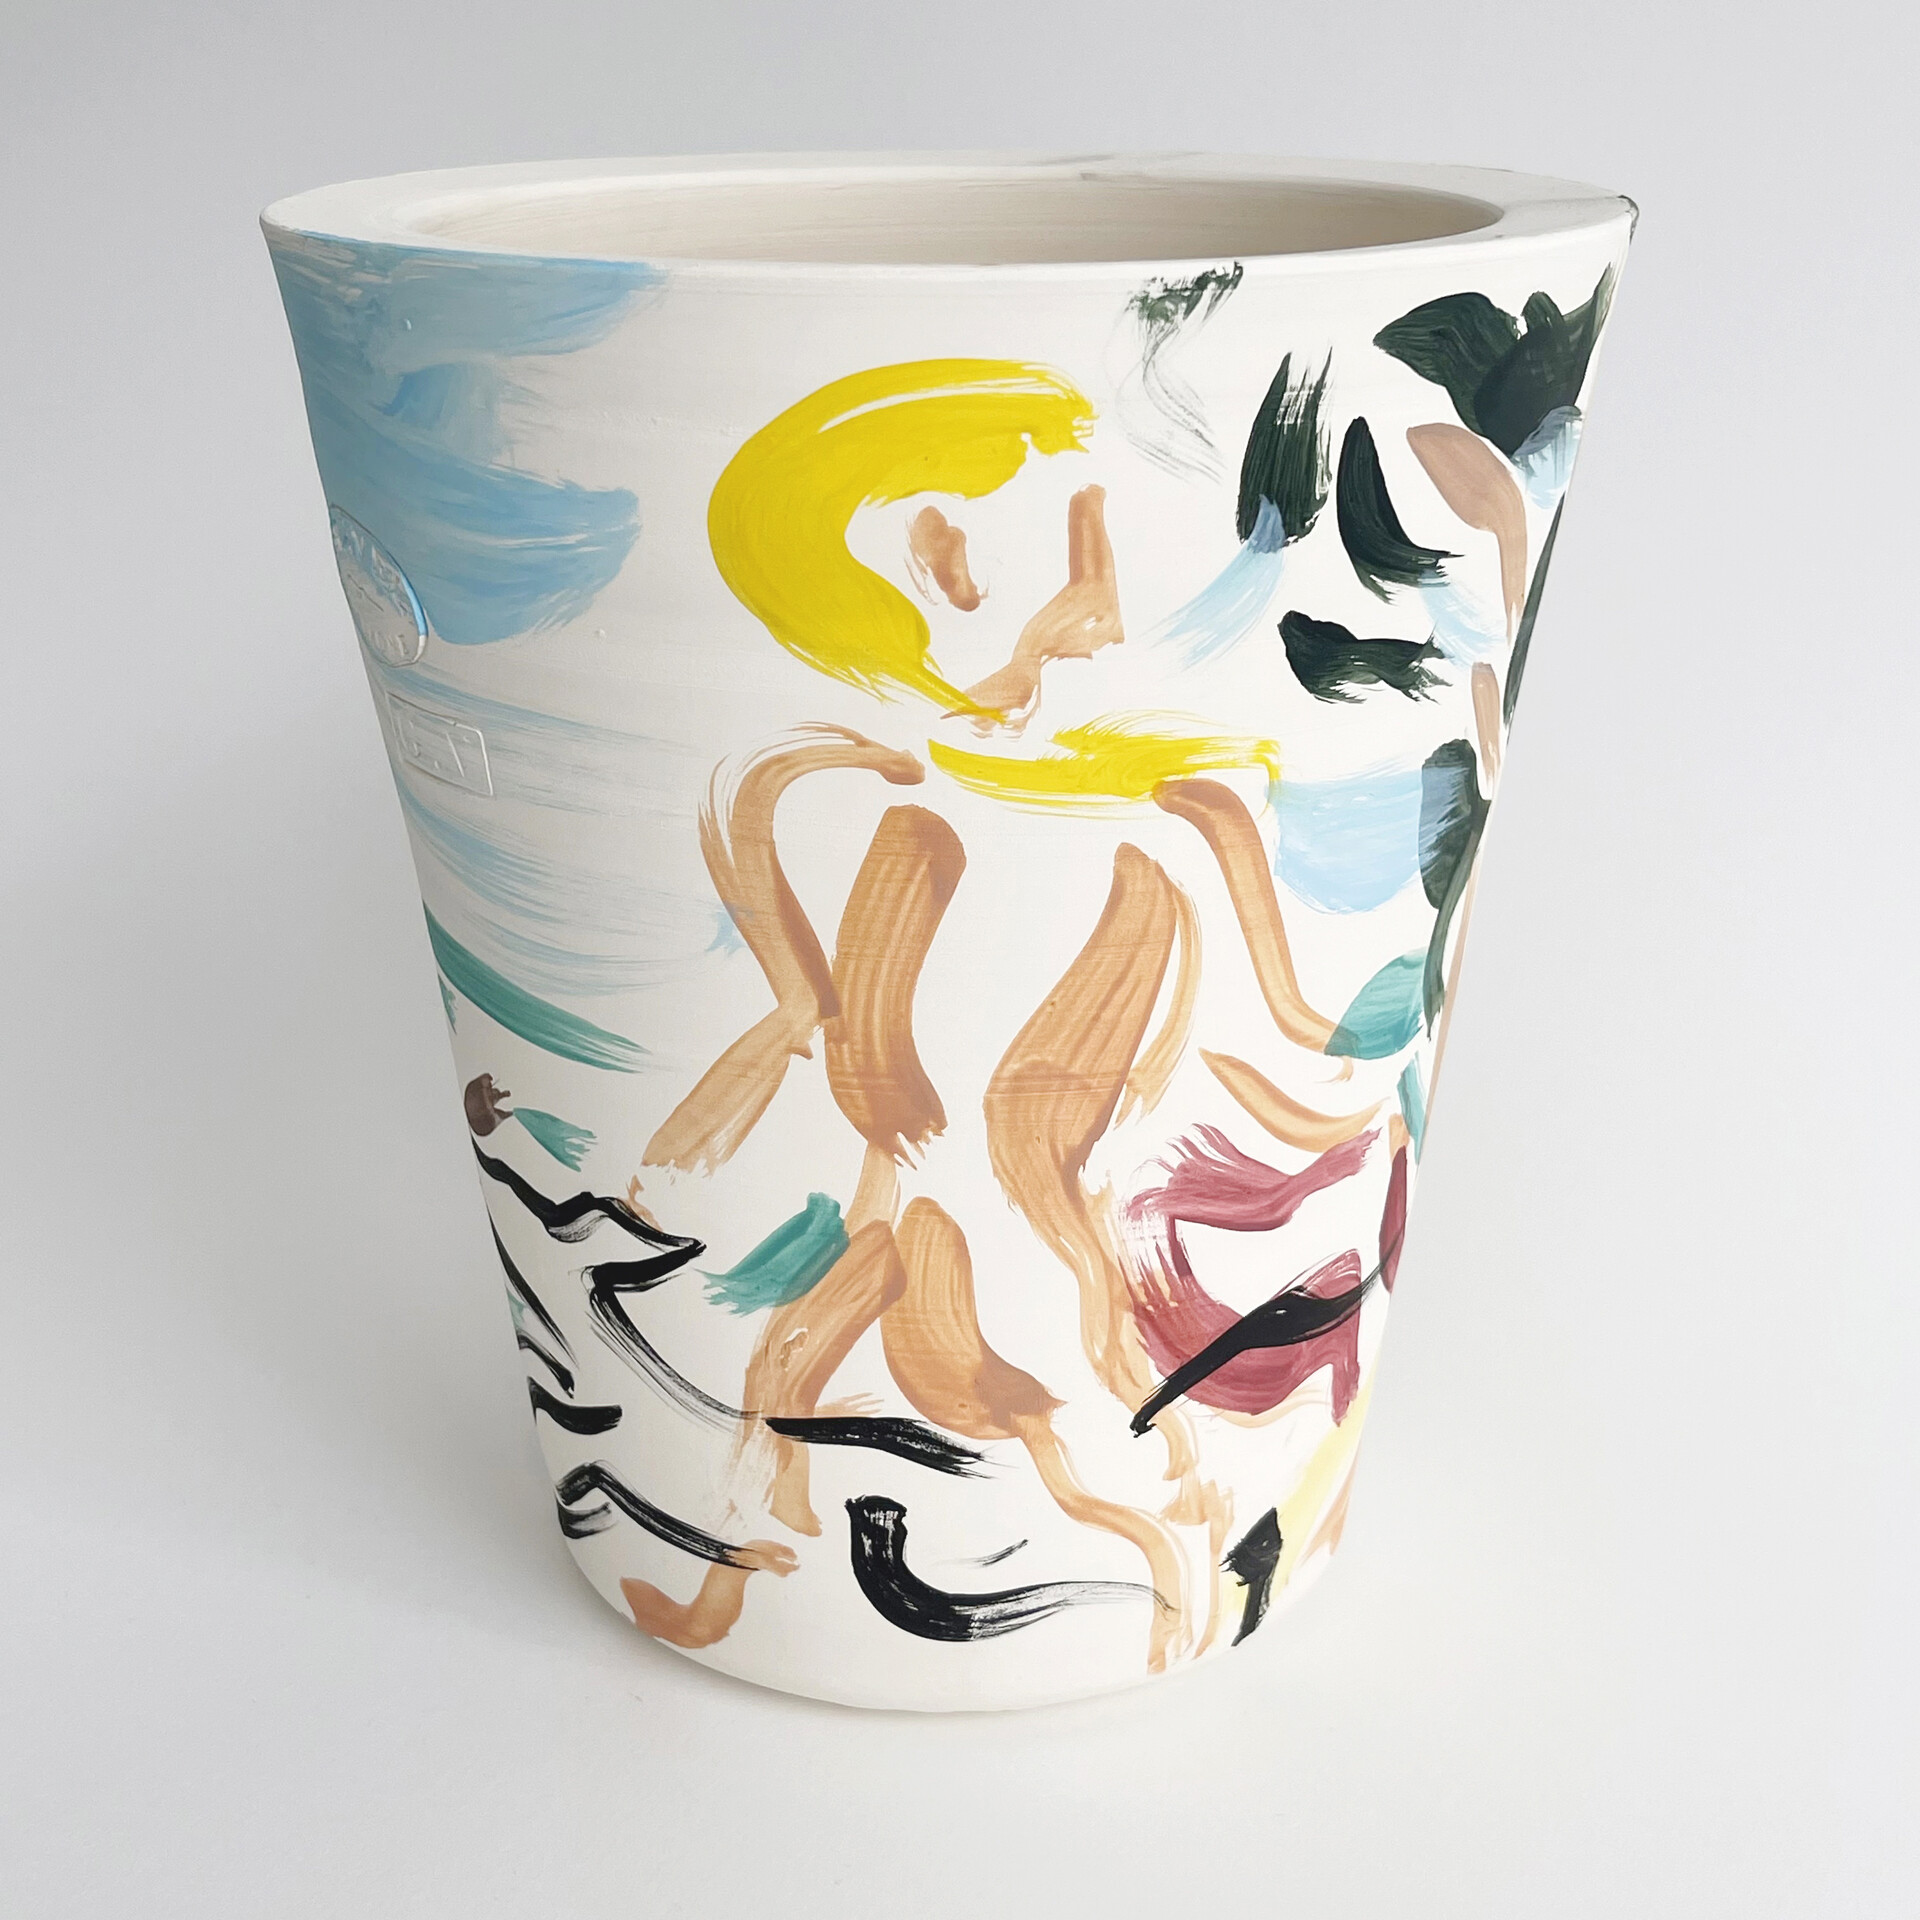 „Plage de Porquerolles”, 2021, oil paint on ceramics, 19,5 x 18, 5 cm